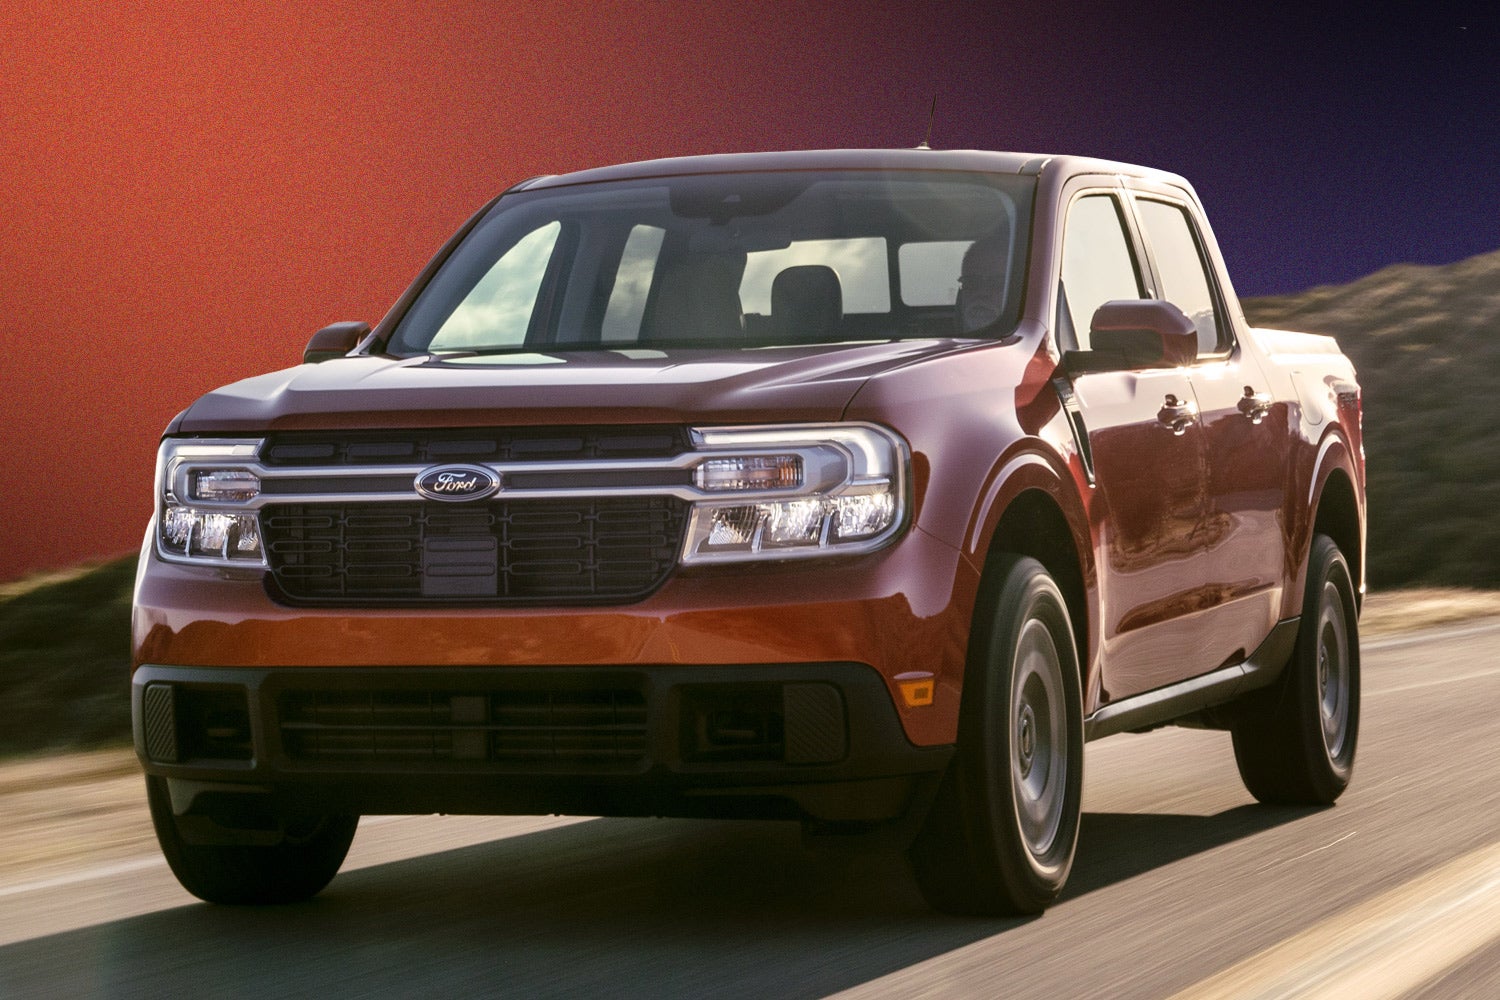 Đó là một chiếc xe bán tải với khả năng tiết kiệm nhiên liệu và mức giá tương tự của một chiếc sedan giá cả phải chăng. Ảnh: @Ford.